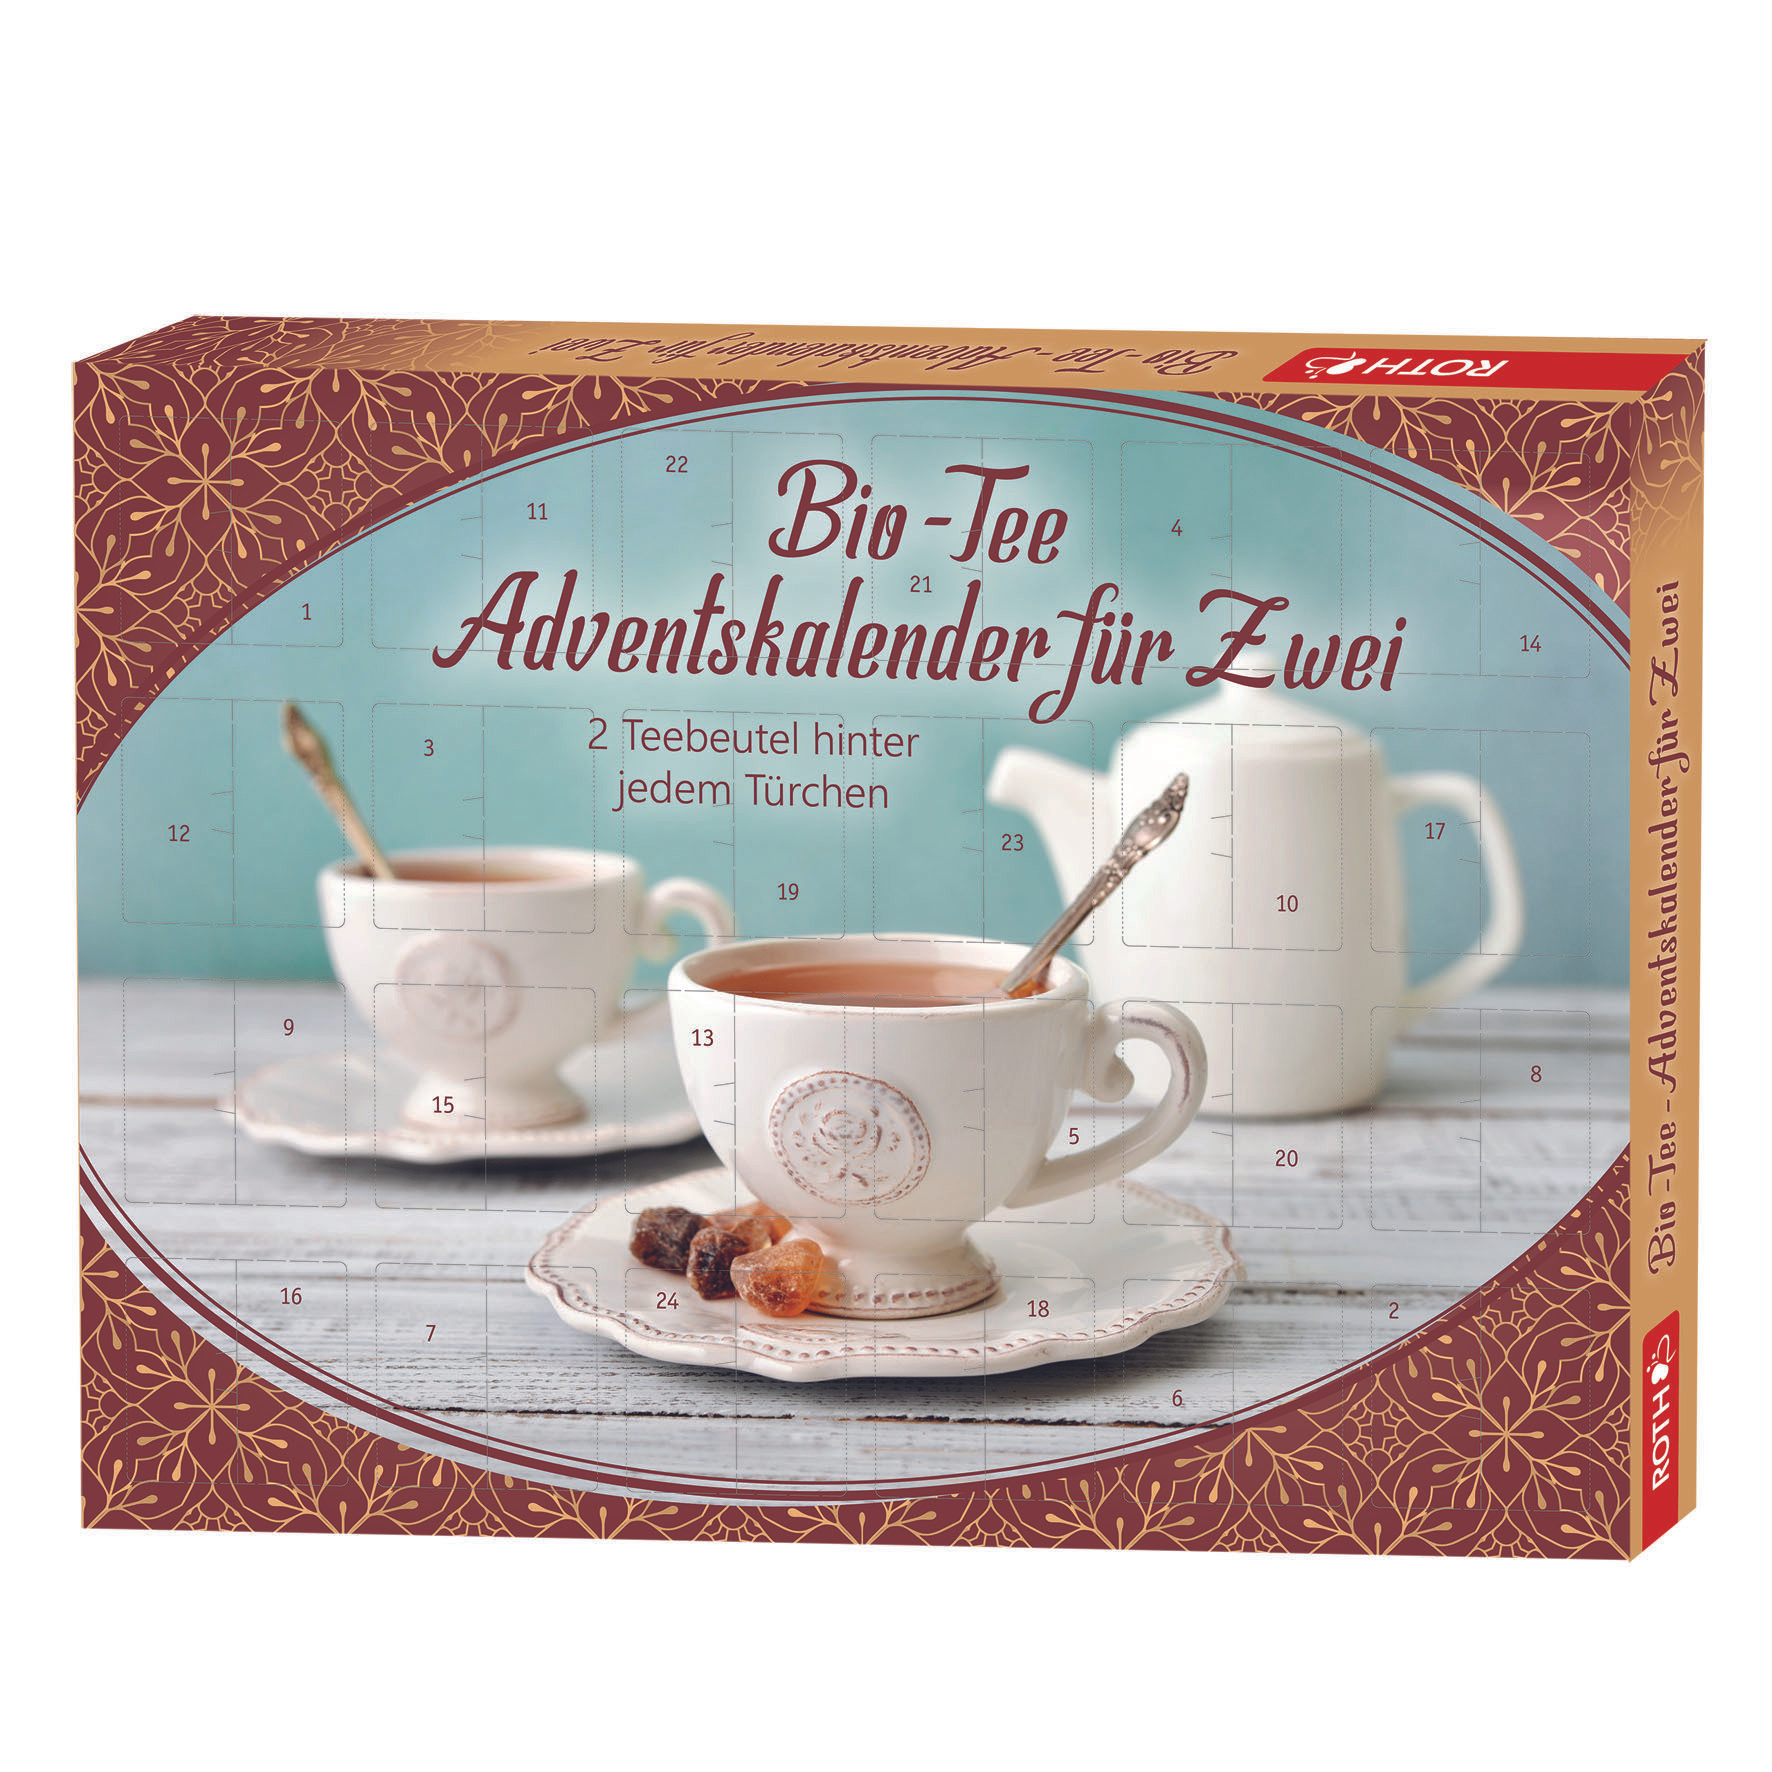 Bio Tee Adventskalender für 2 Personen - Kalender bei Weltbild.de